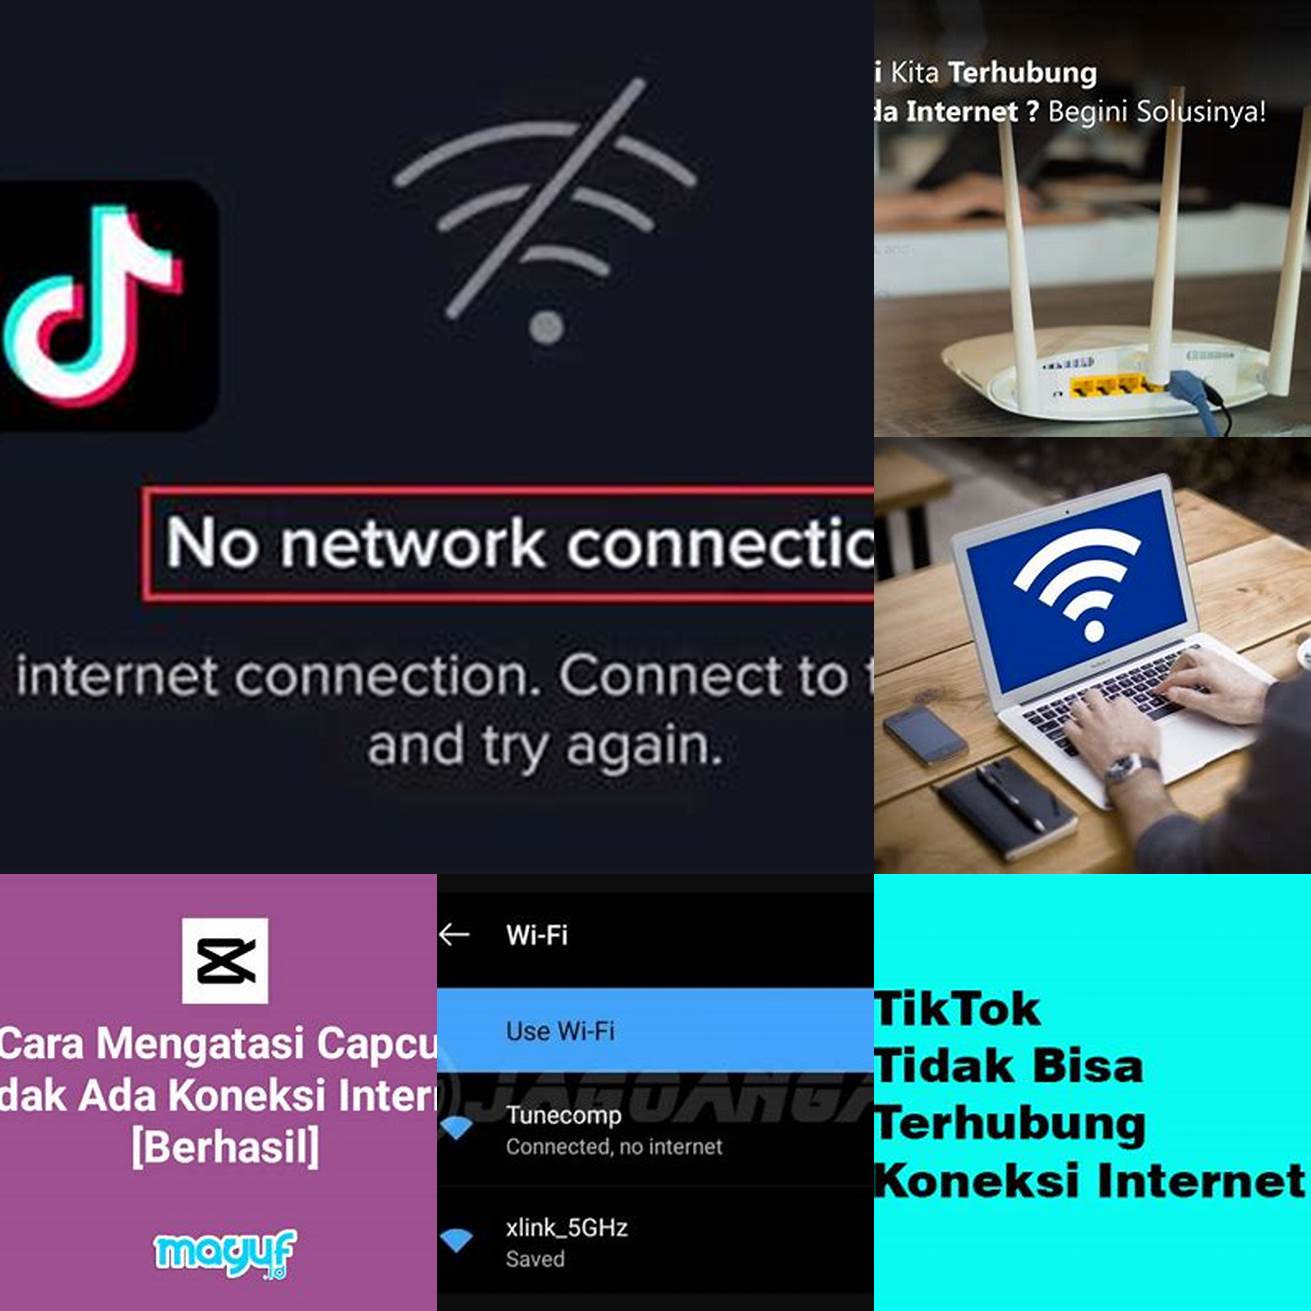 Tidak membutuhkan koneksi internet